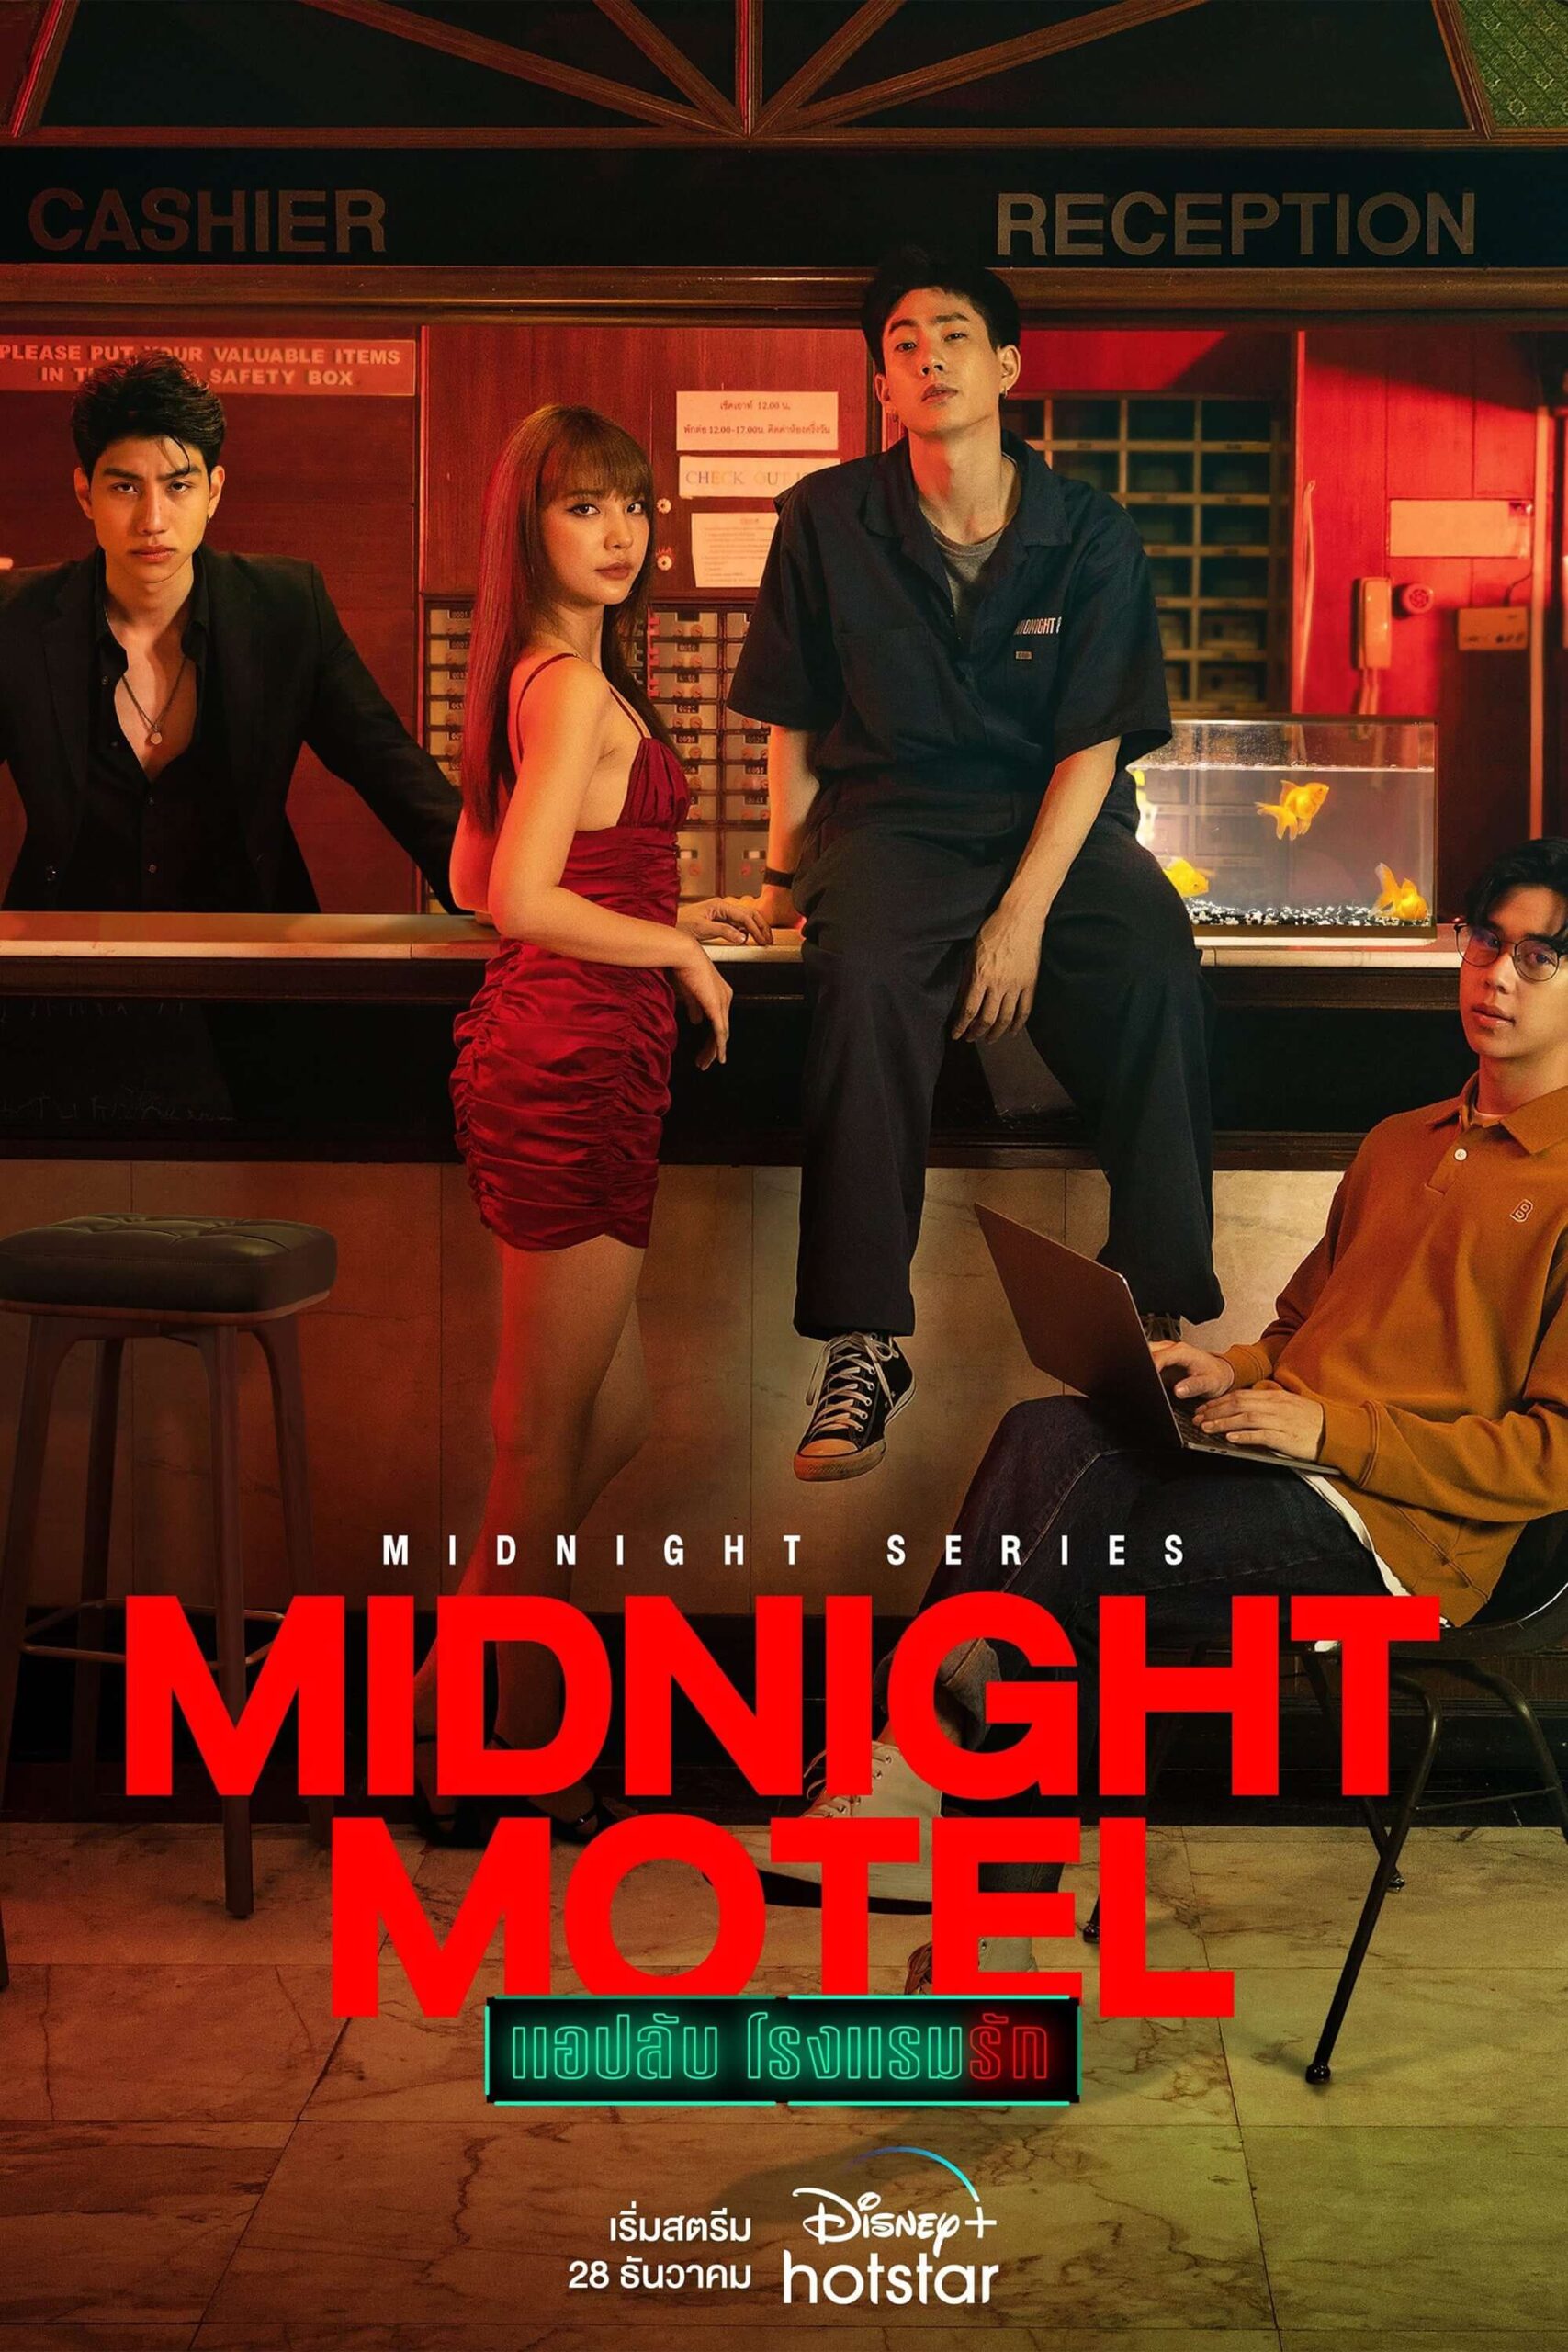 متل نیمه شب (Midnight Motel)